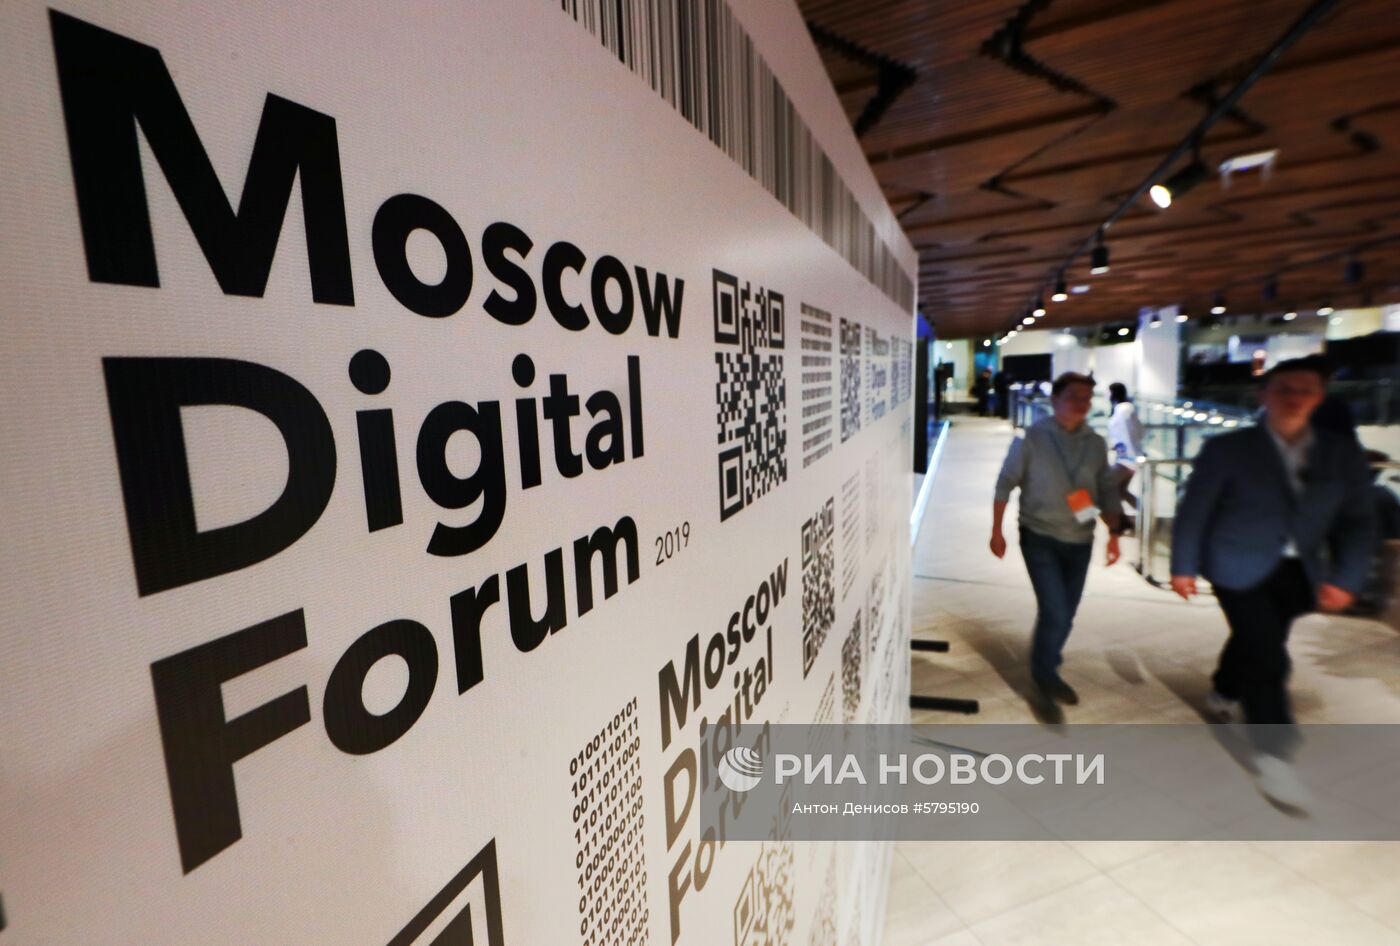 Московский цифровой форум